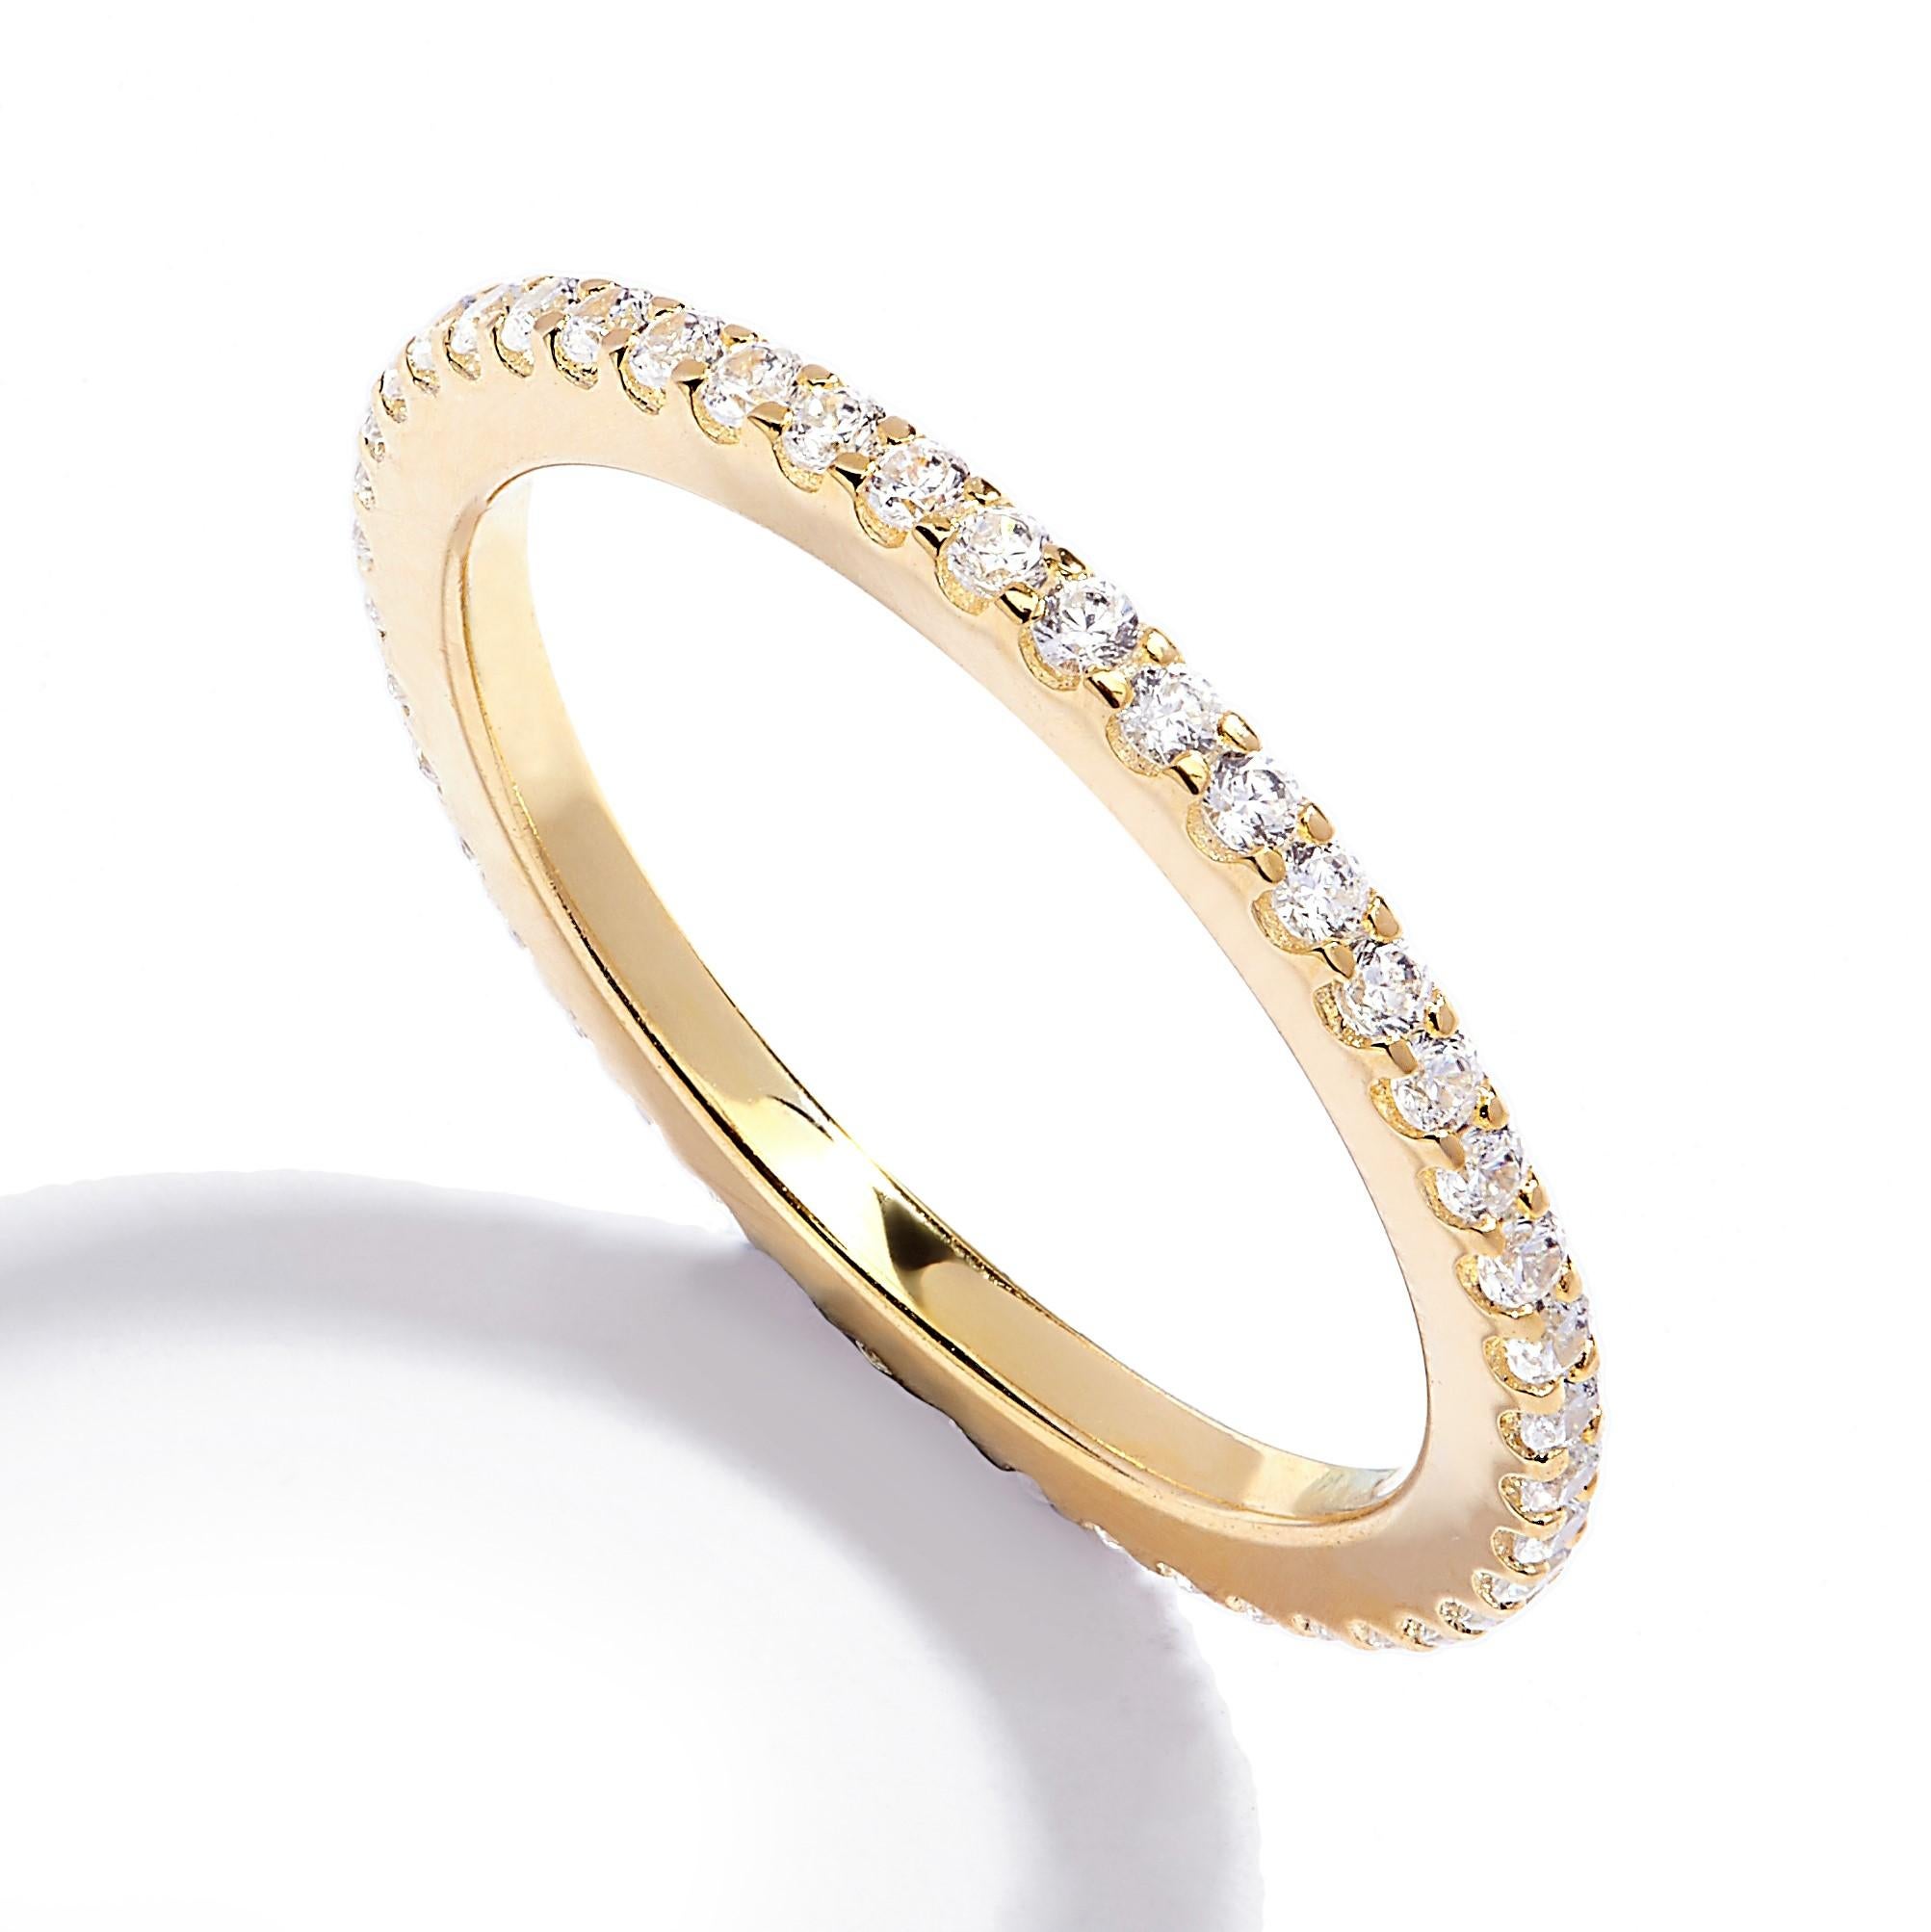 Zwei unserer meistverkauften zeitlosen Ringe für die ganze Ewigkeit aus rhodiniertem, Roségold oder Gelbgold, tragen Sie ein, zwei oder drei zusammen für einen trendigen, gestapelten Look.

Ein wunderschöner klassischer Ring, der bequem und einfach